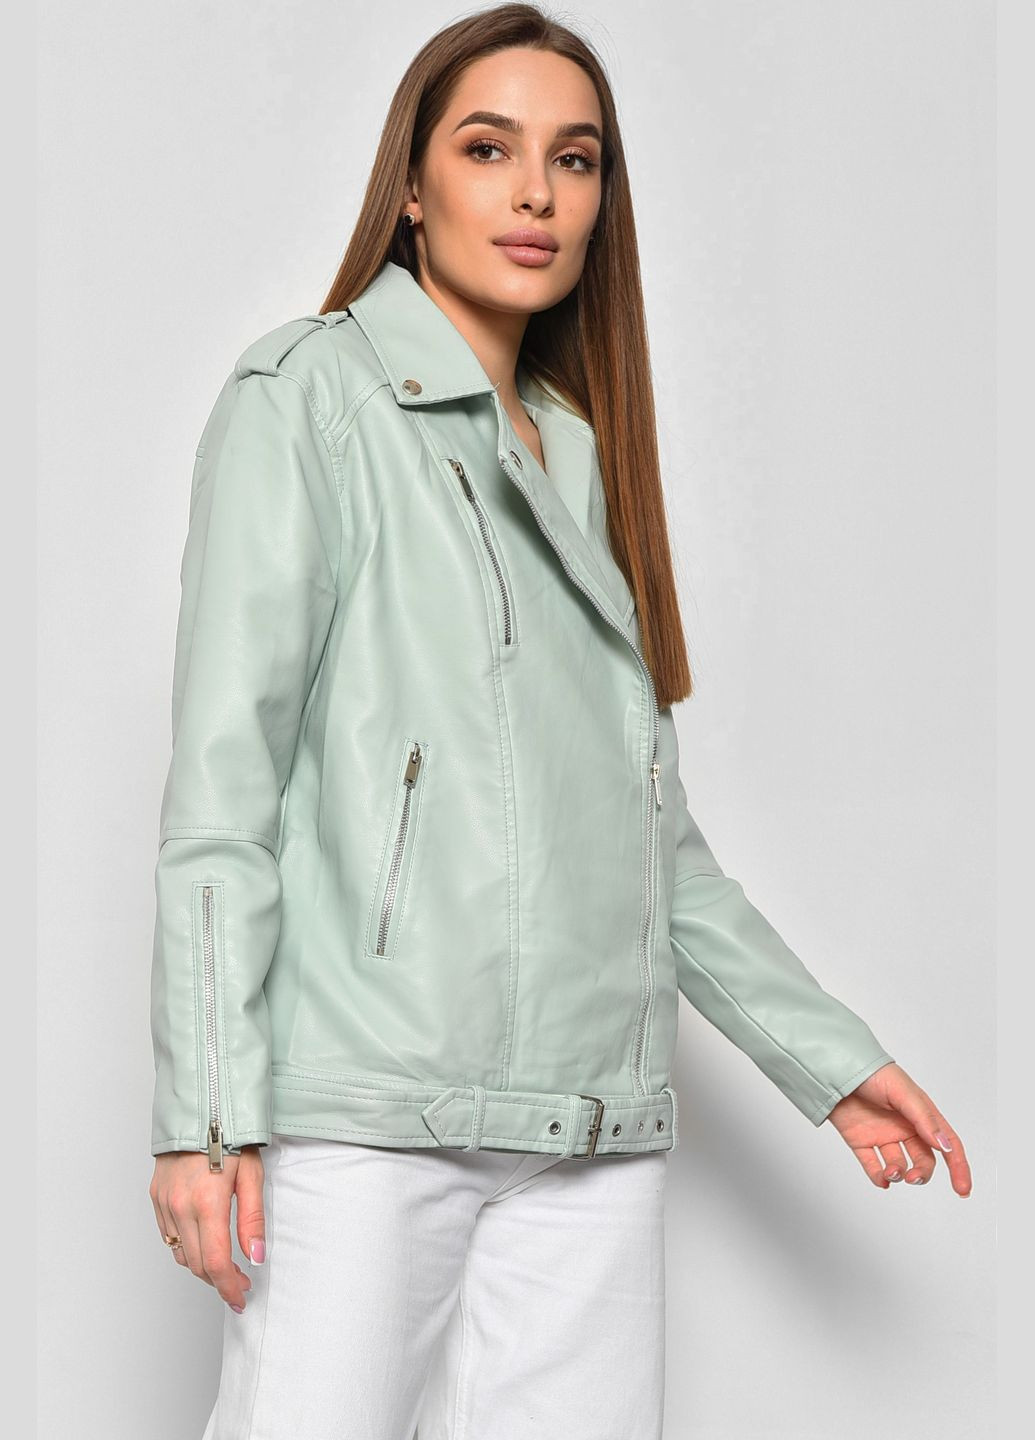 Мятная демисезонная куртка женская из экокожи мятного цвета Let's Shop